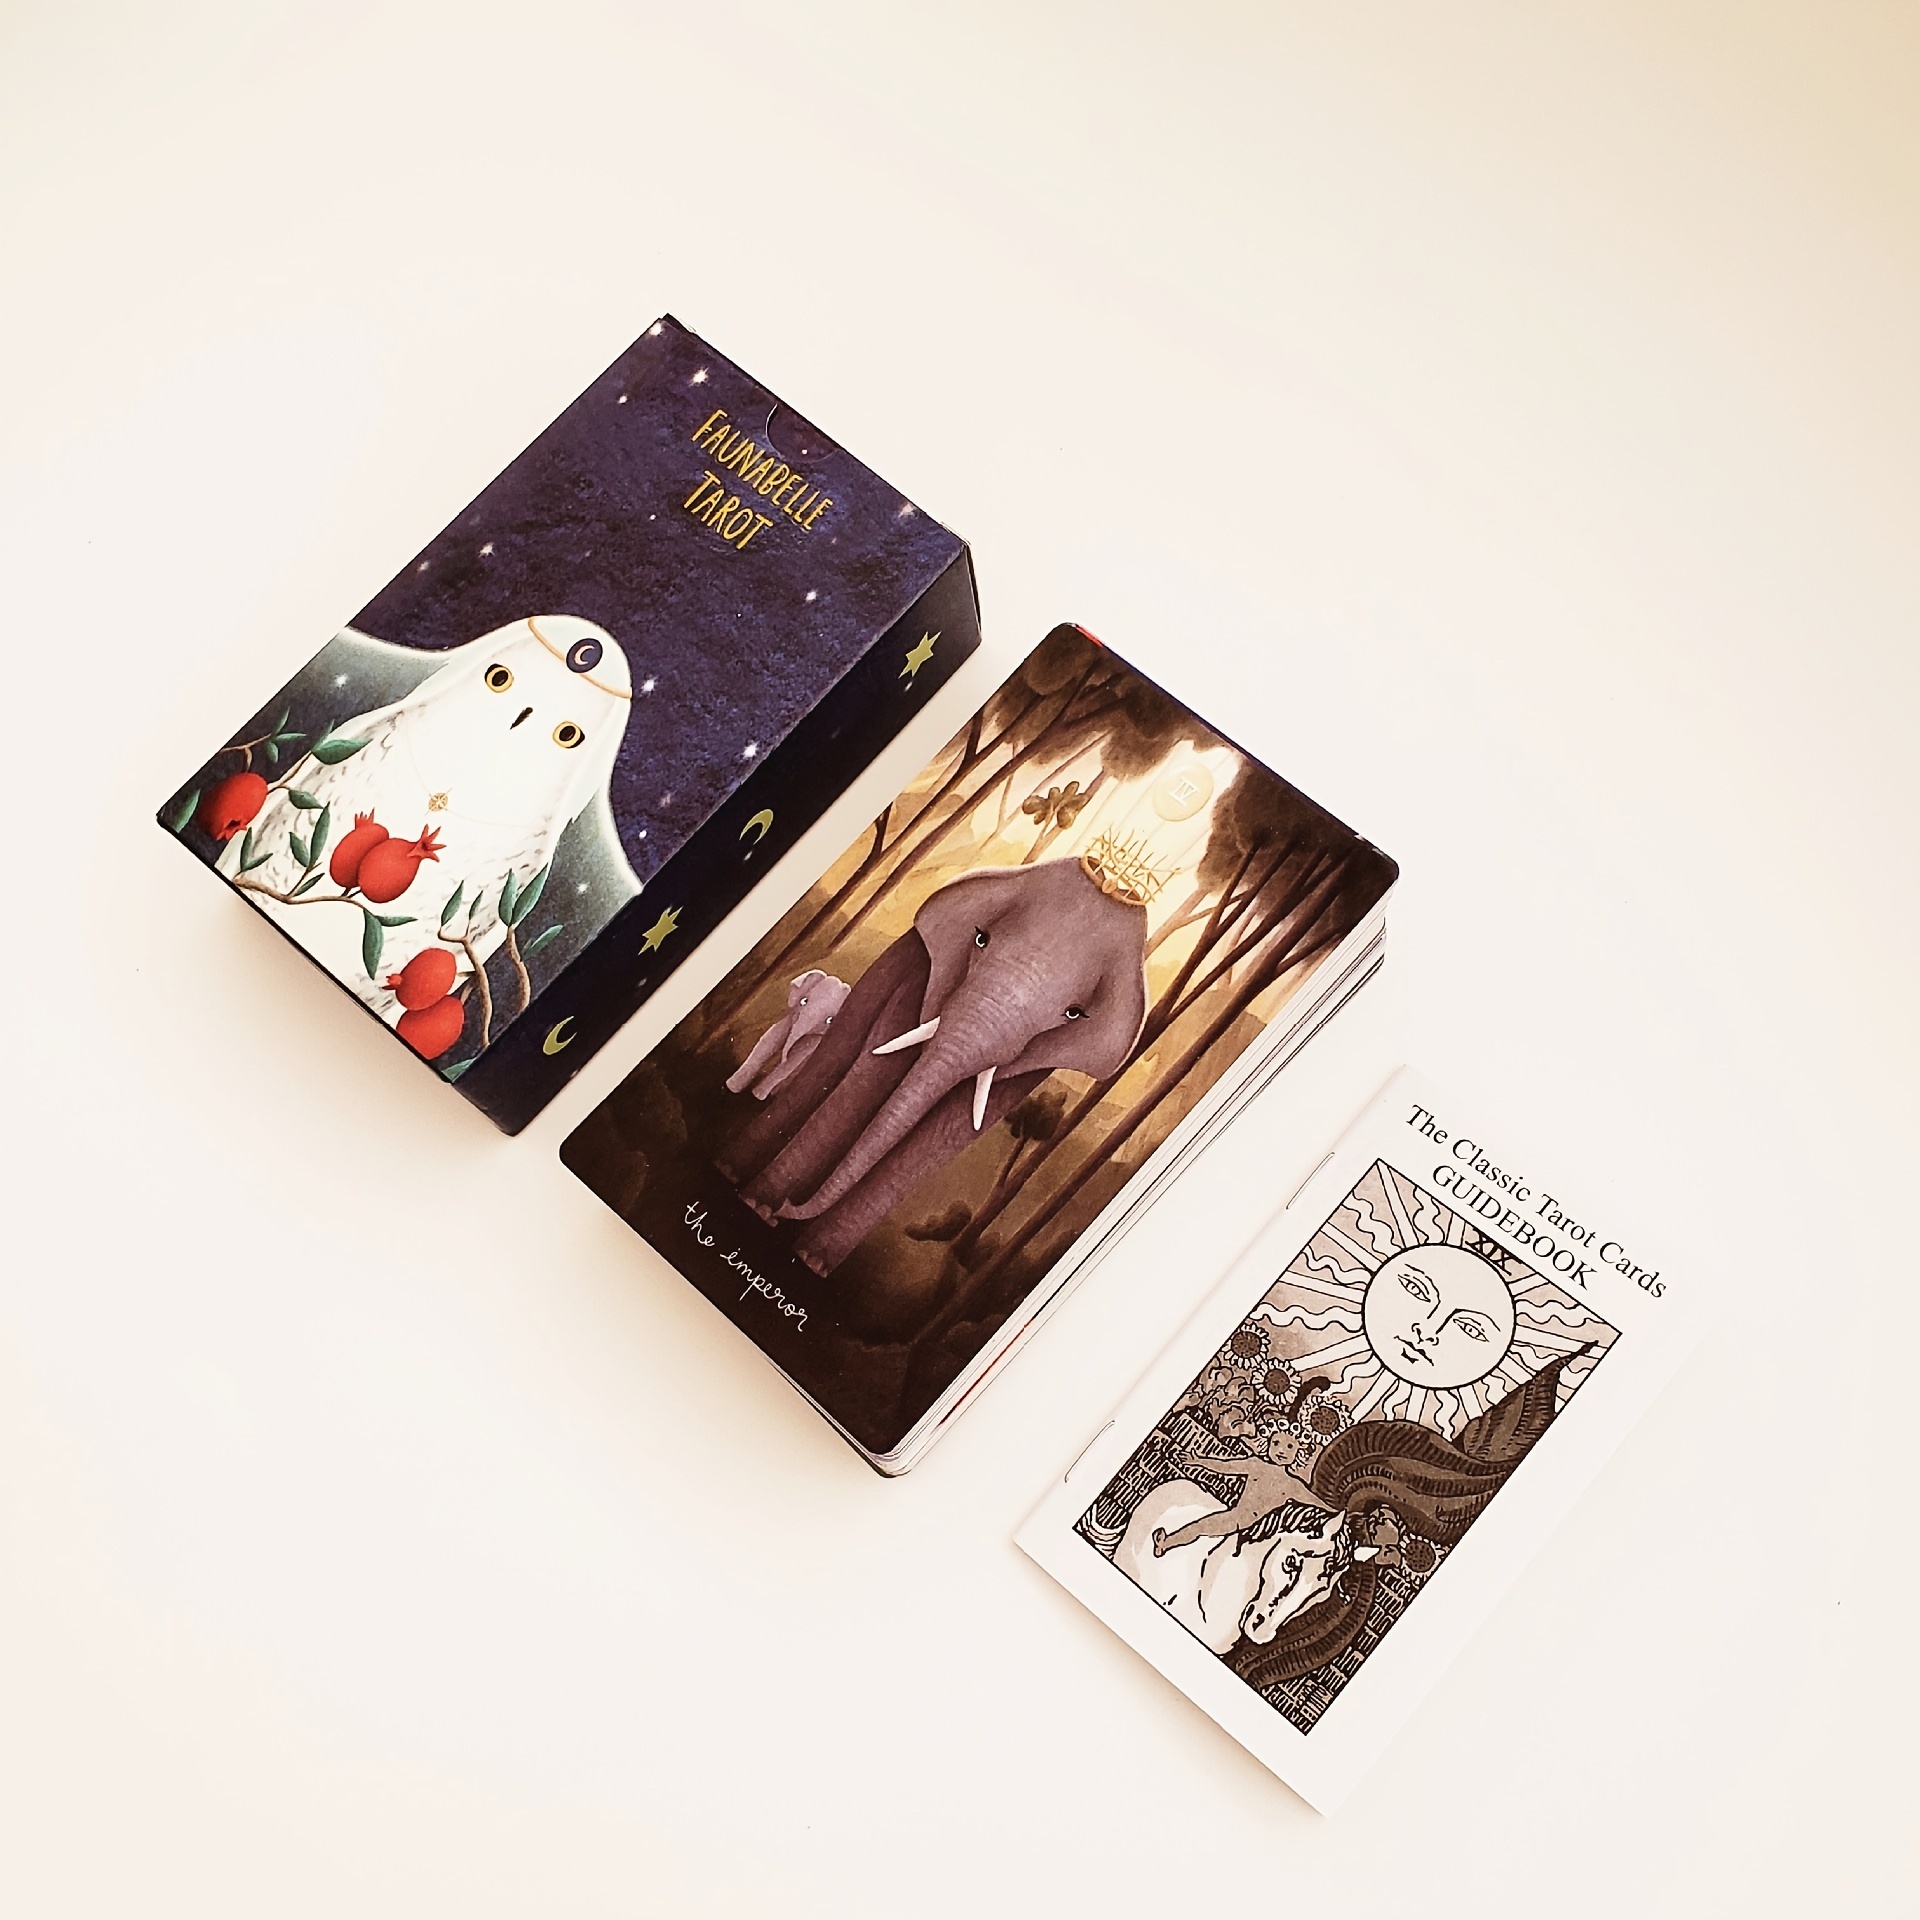 フォーナベル・タロットカード、12*7センチメートルのサイズ、占いゲーム、占いカード、紙のガイドブック付き、かわいい動物のタロットデッキ、フォーナ・ベル